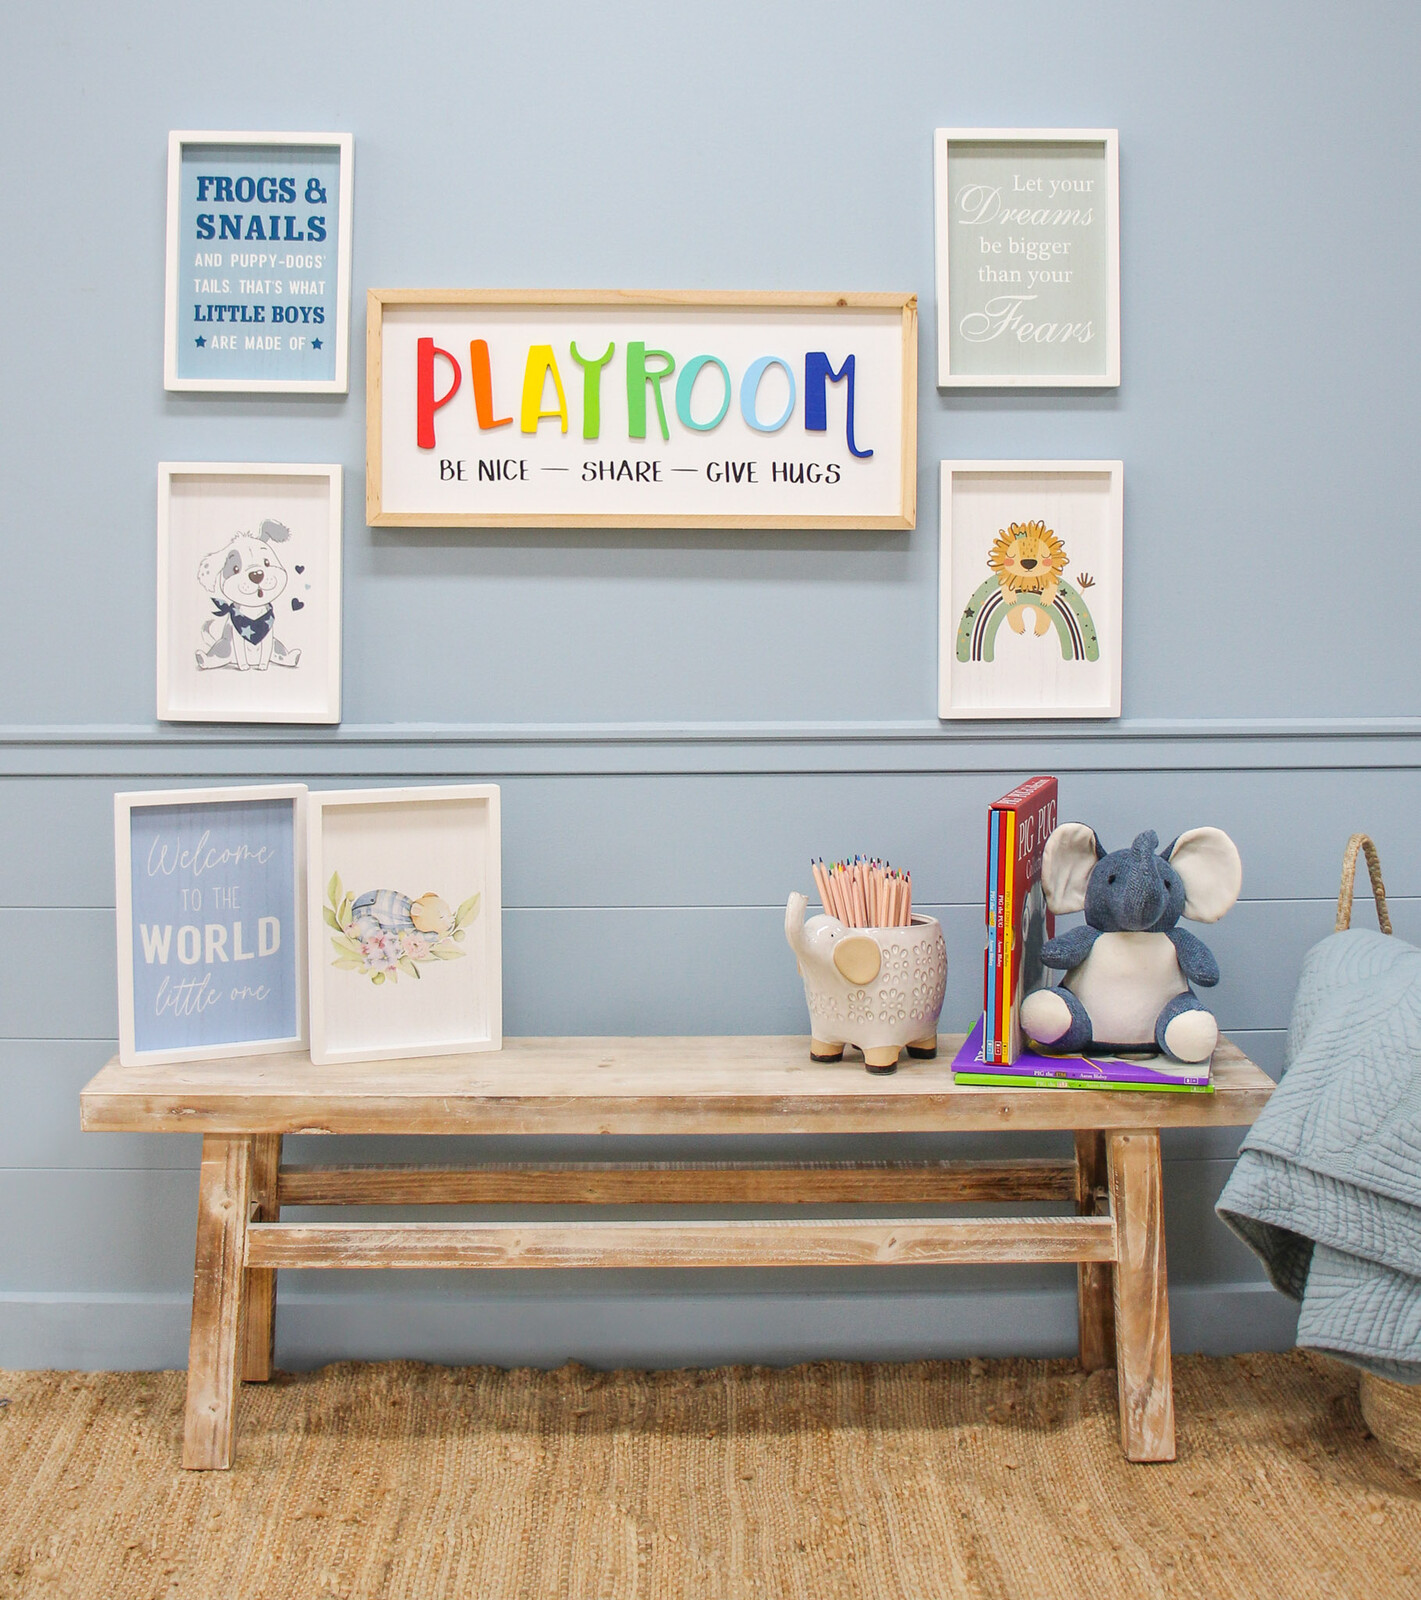 Sign Playroom